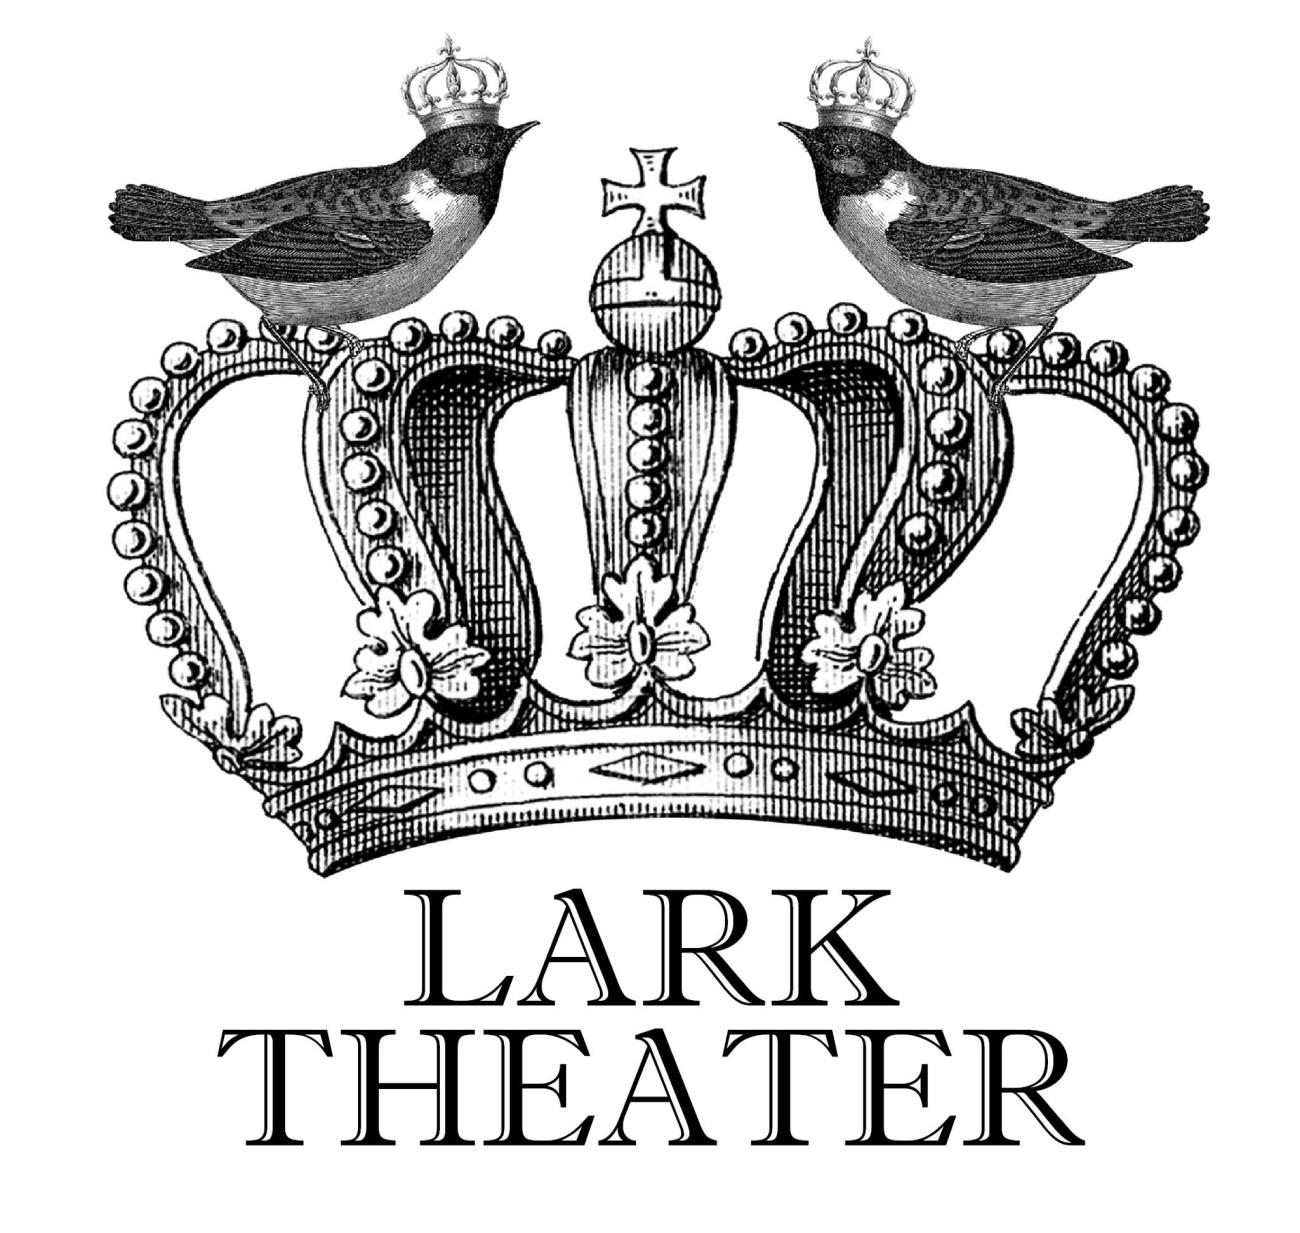 The Lark Theater